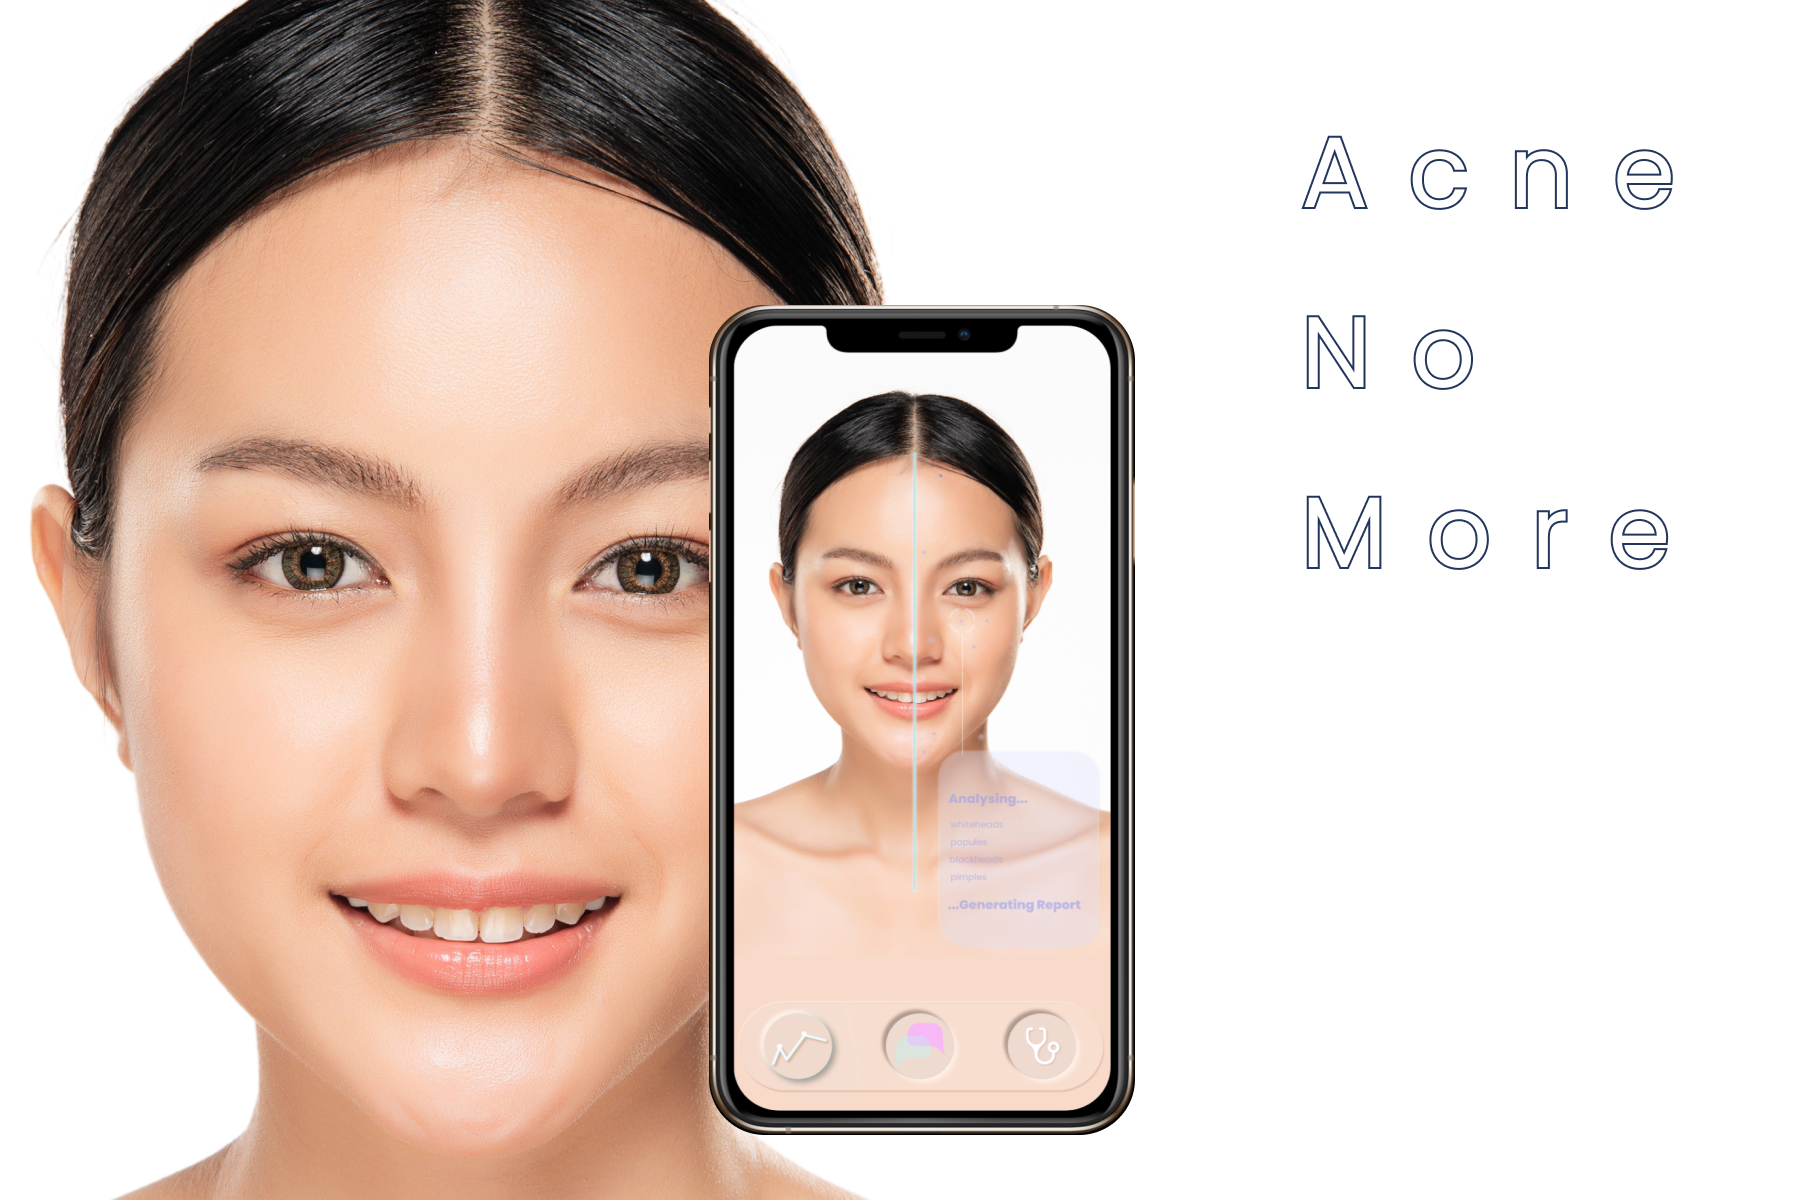 app for acne self-assessment